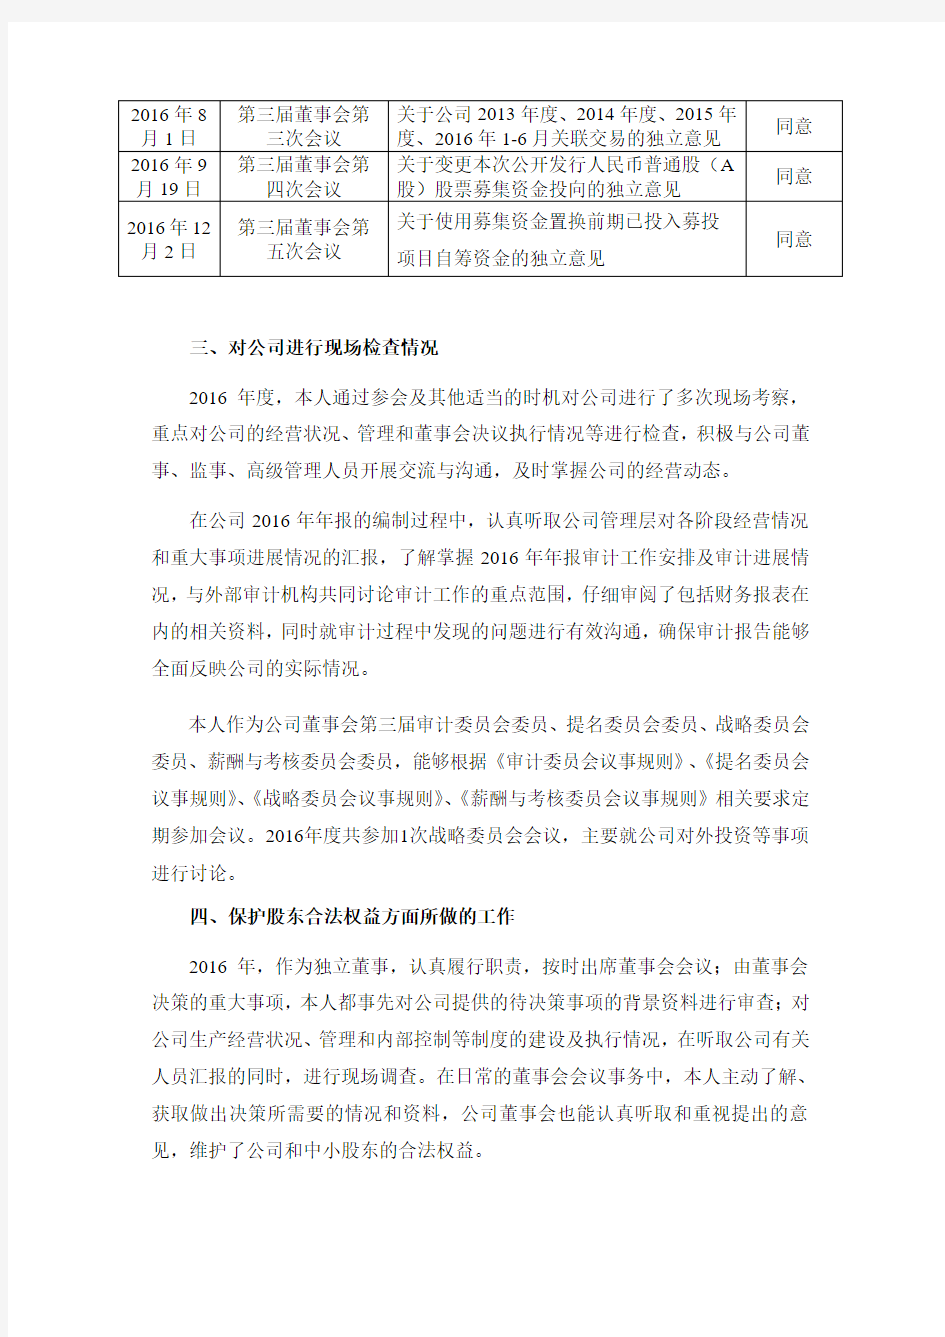 神宇通信科技股份公司独立董事胡建军2016年度的述职报告